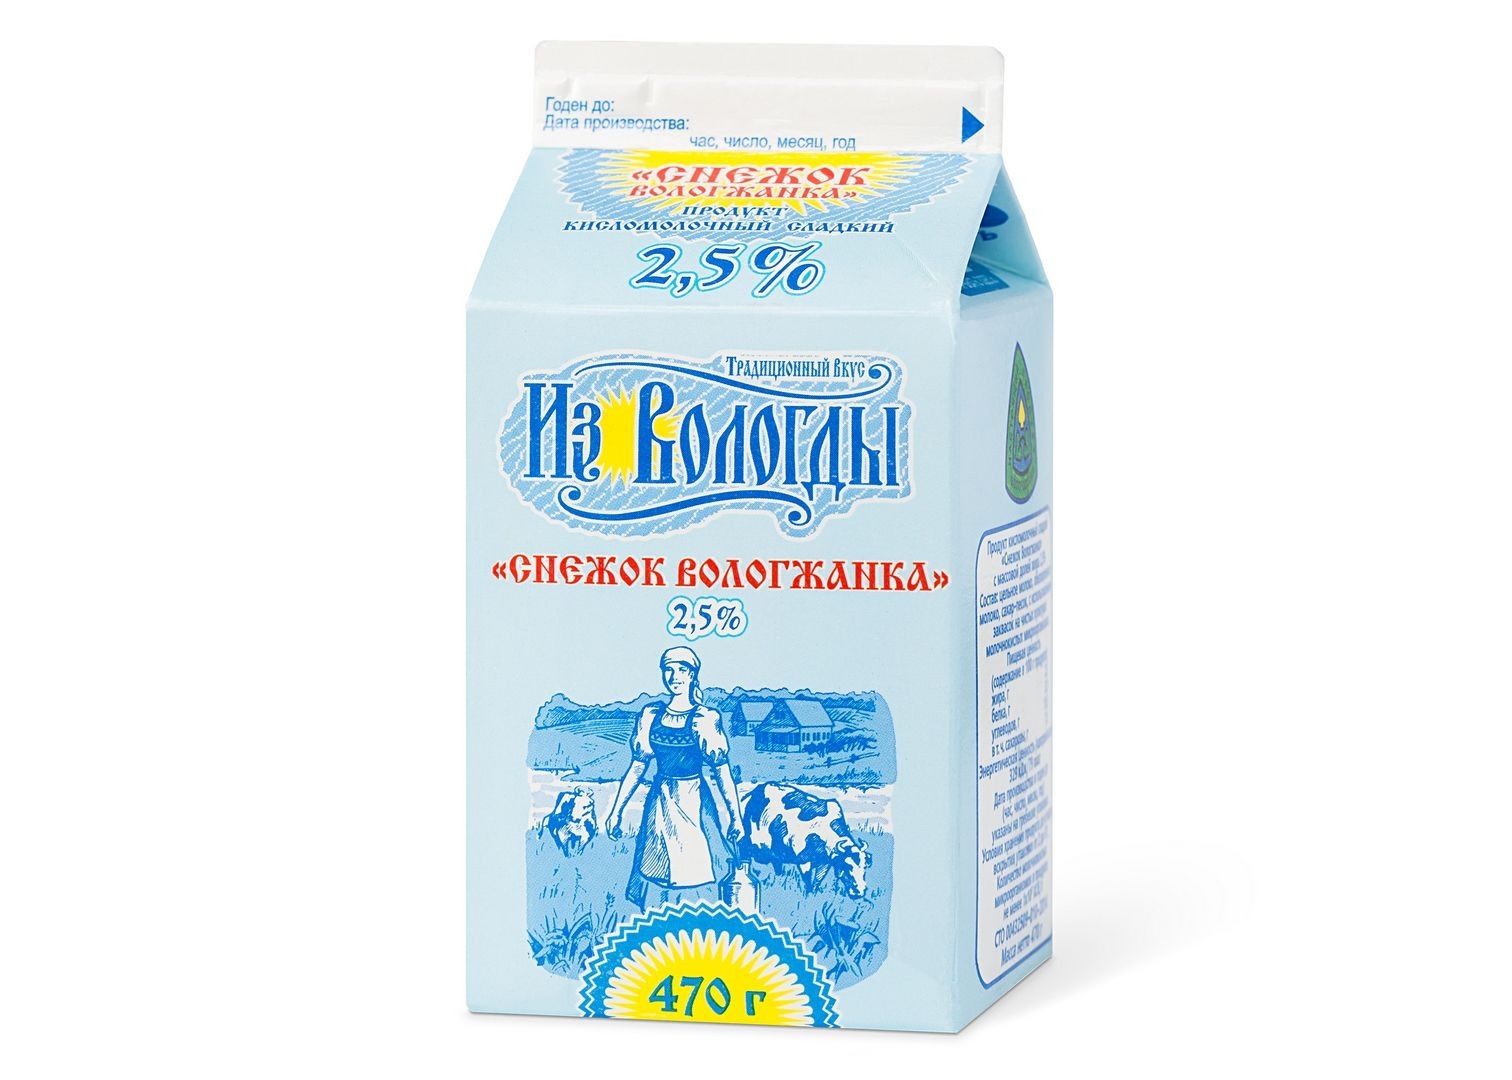 Продукт кисломолоч 2.5% Снежок  Вологда  470г - интернет-магазин Близнецы